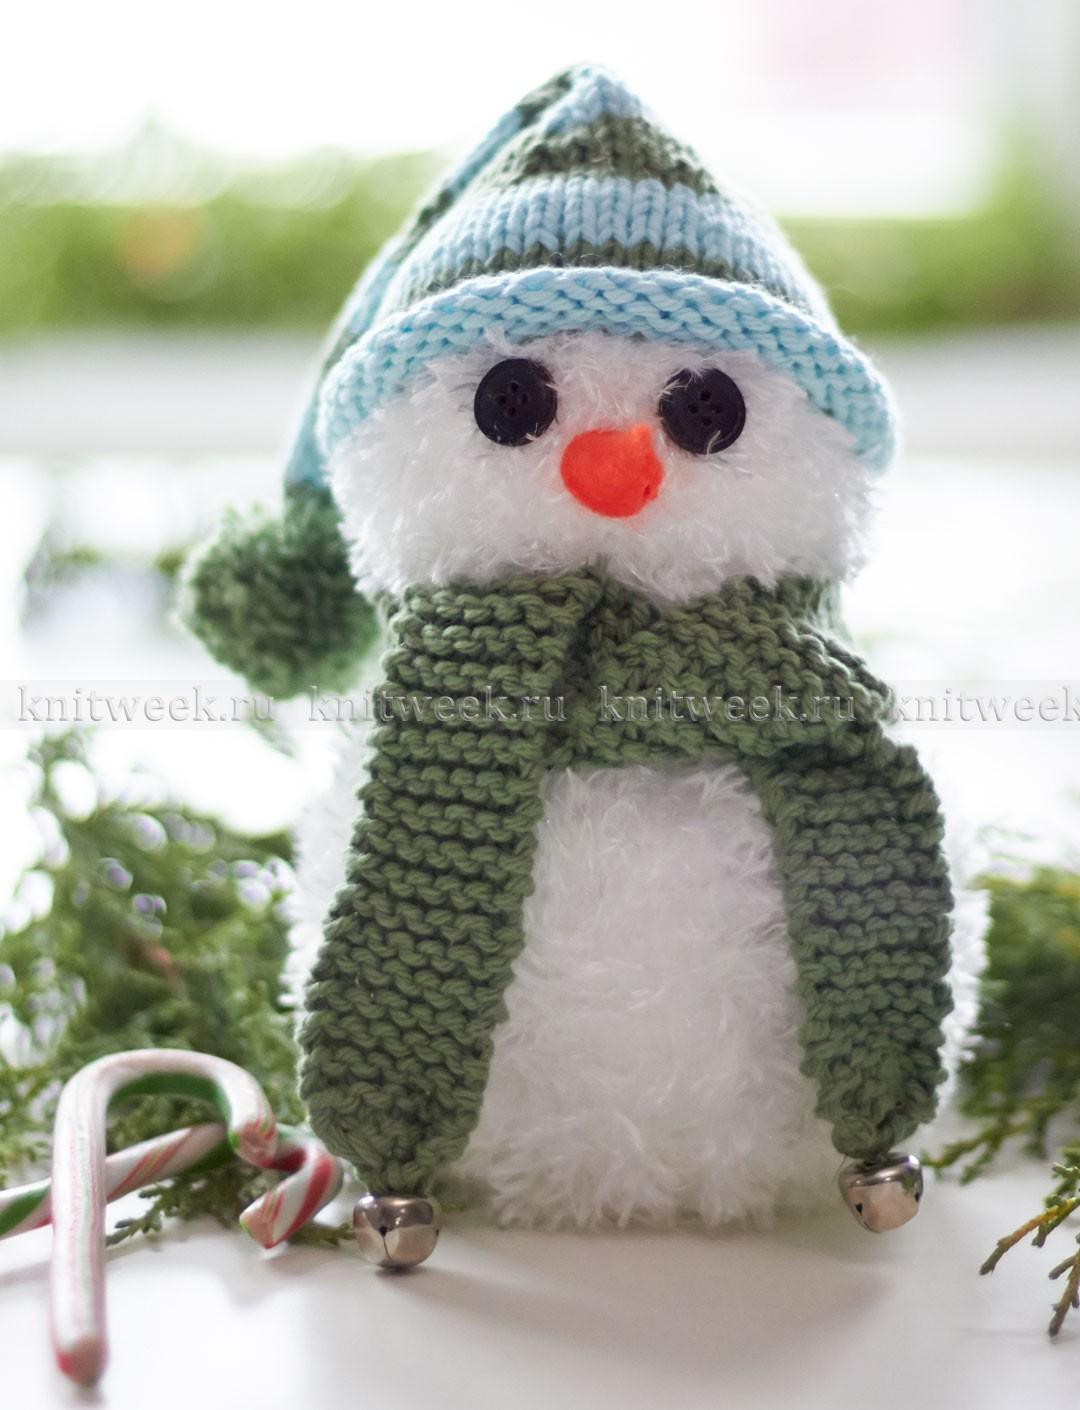 Шапка для снеговика | Снеговик, Бесплатный шаблон, Поделки